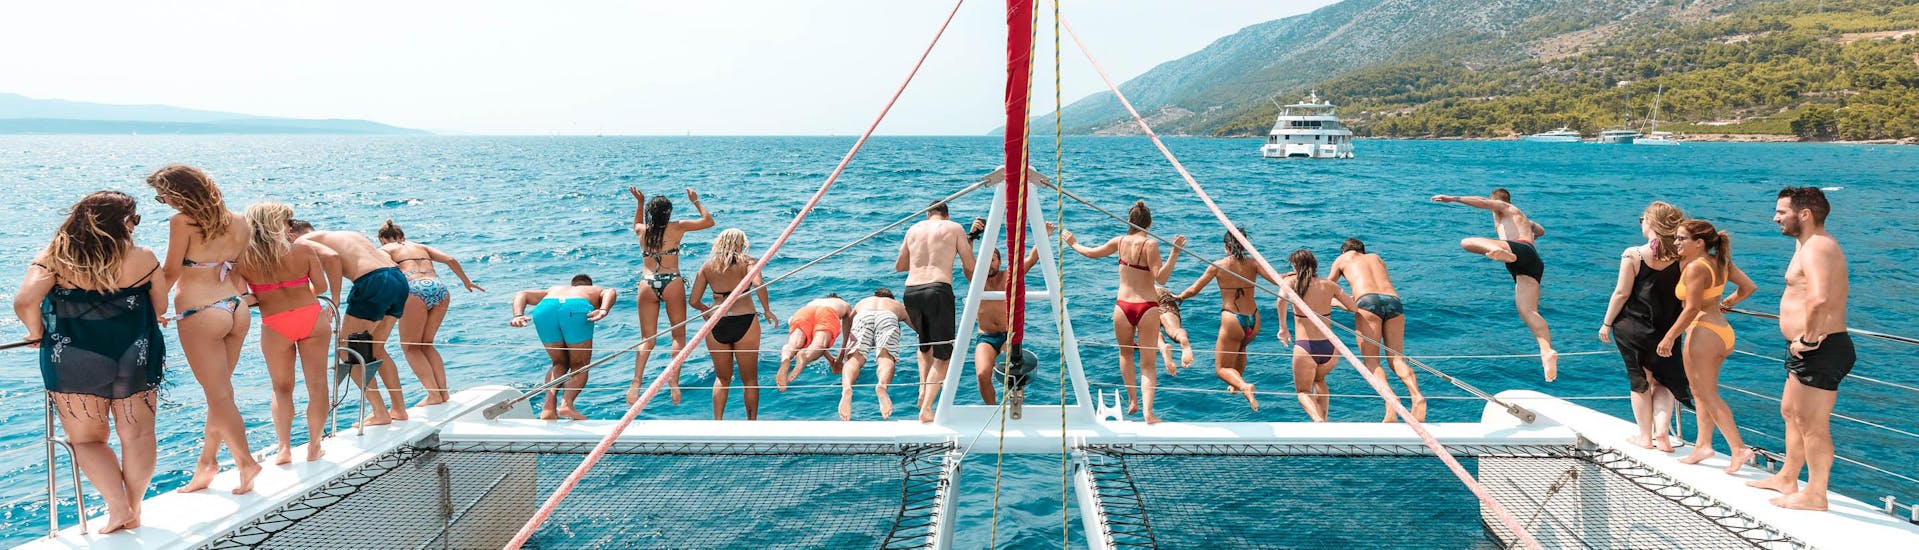 Amici durante la gita in catamarano alle isole Hvar e Pakleni nel Summer Blues di Spalato.